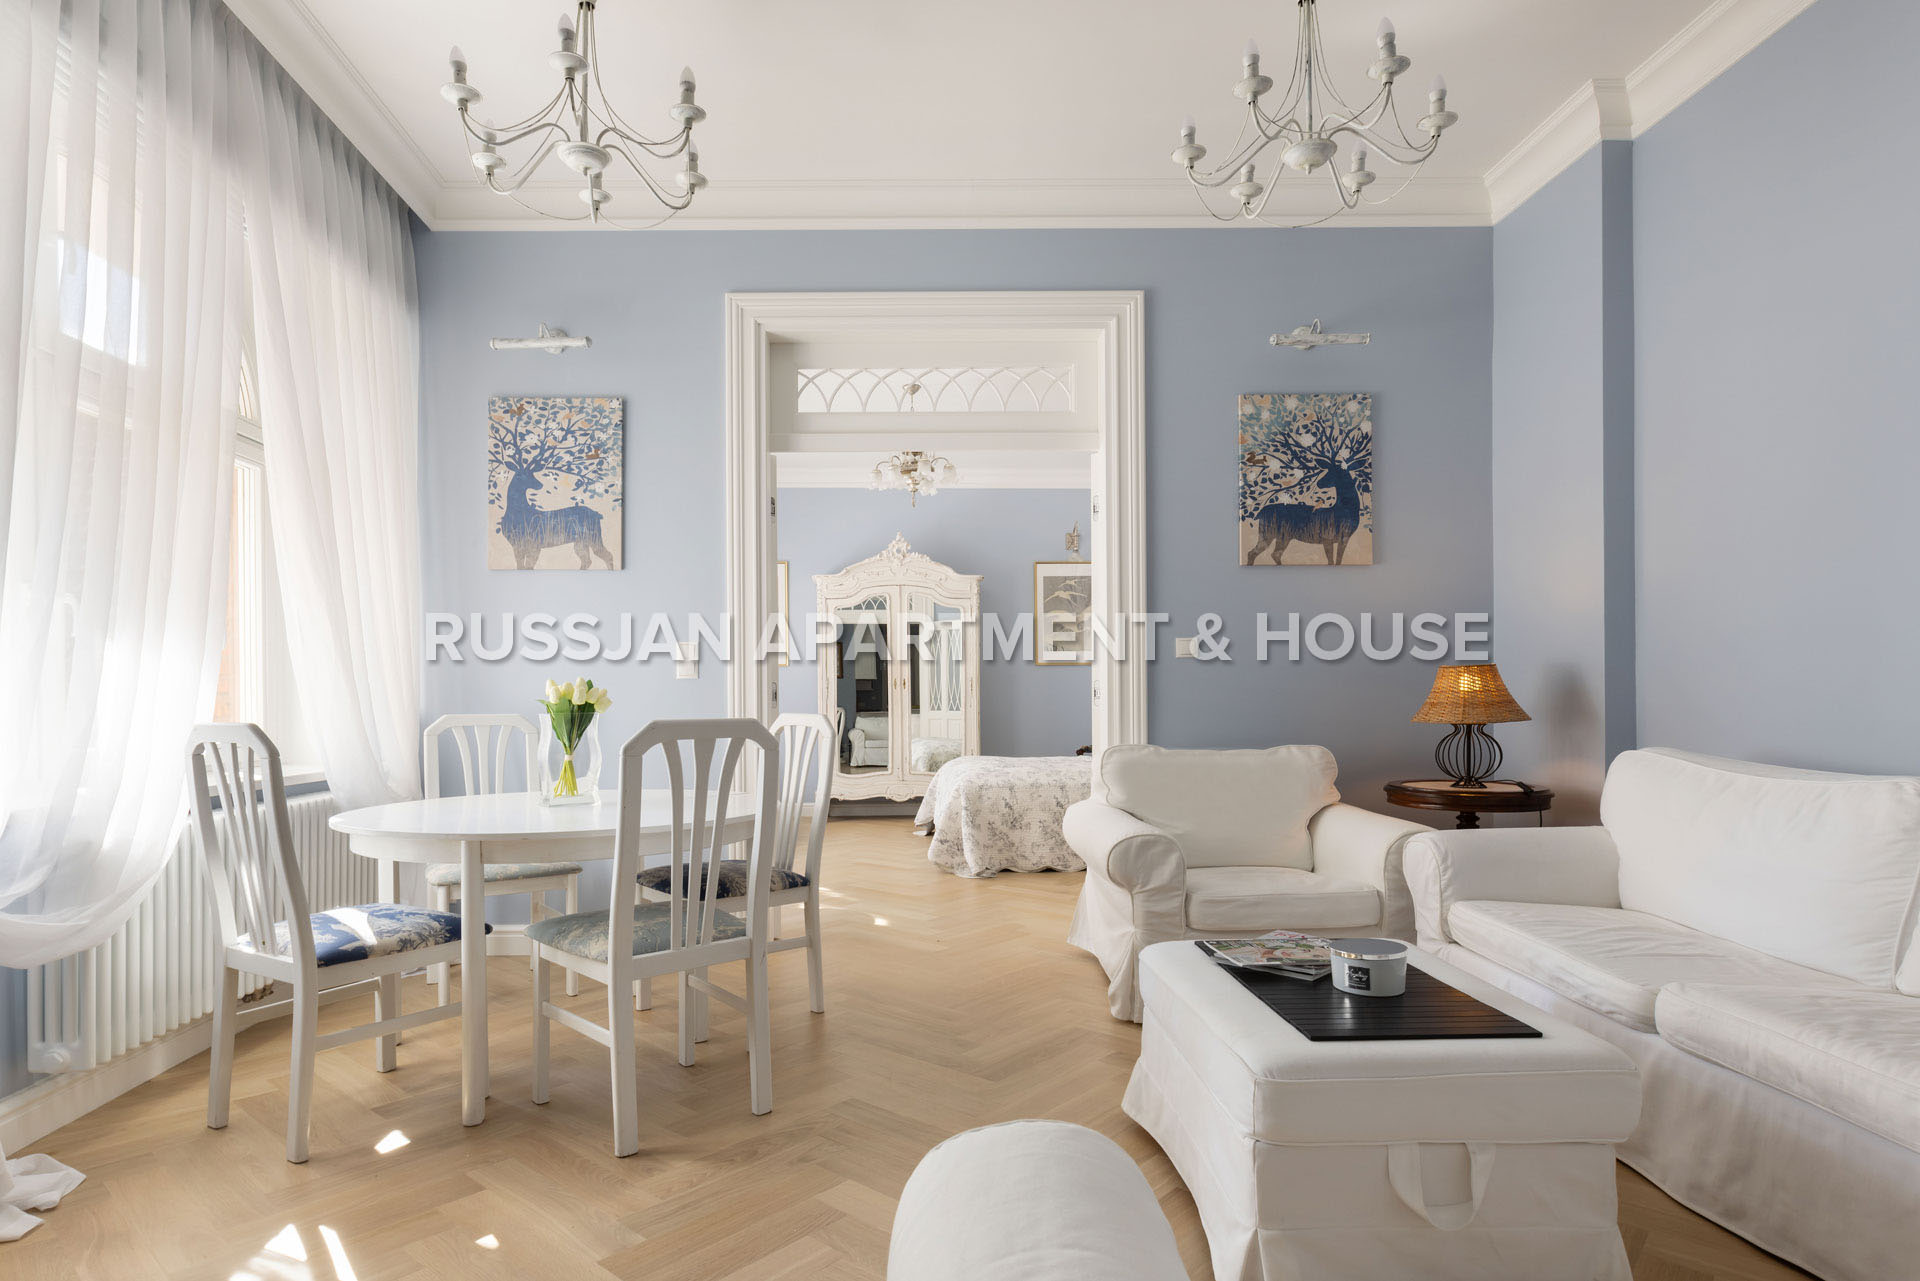 Trzypokojowe mieszkanie na wynajem  Ulica Parkowa | RUSSJAN Apartment & House